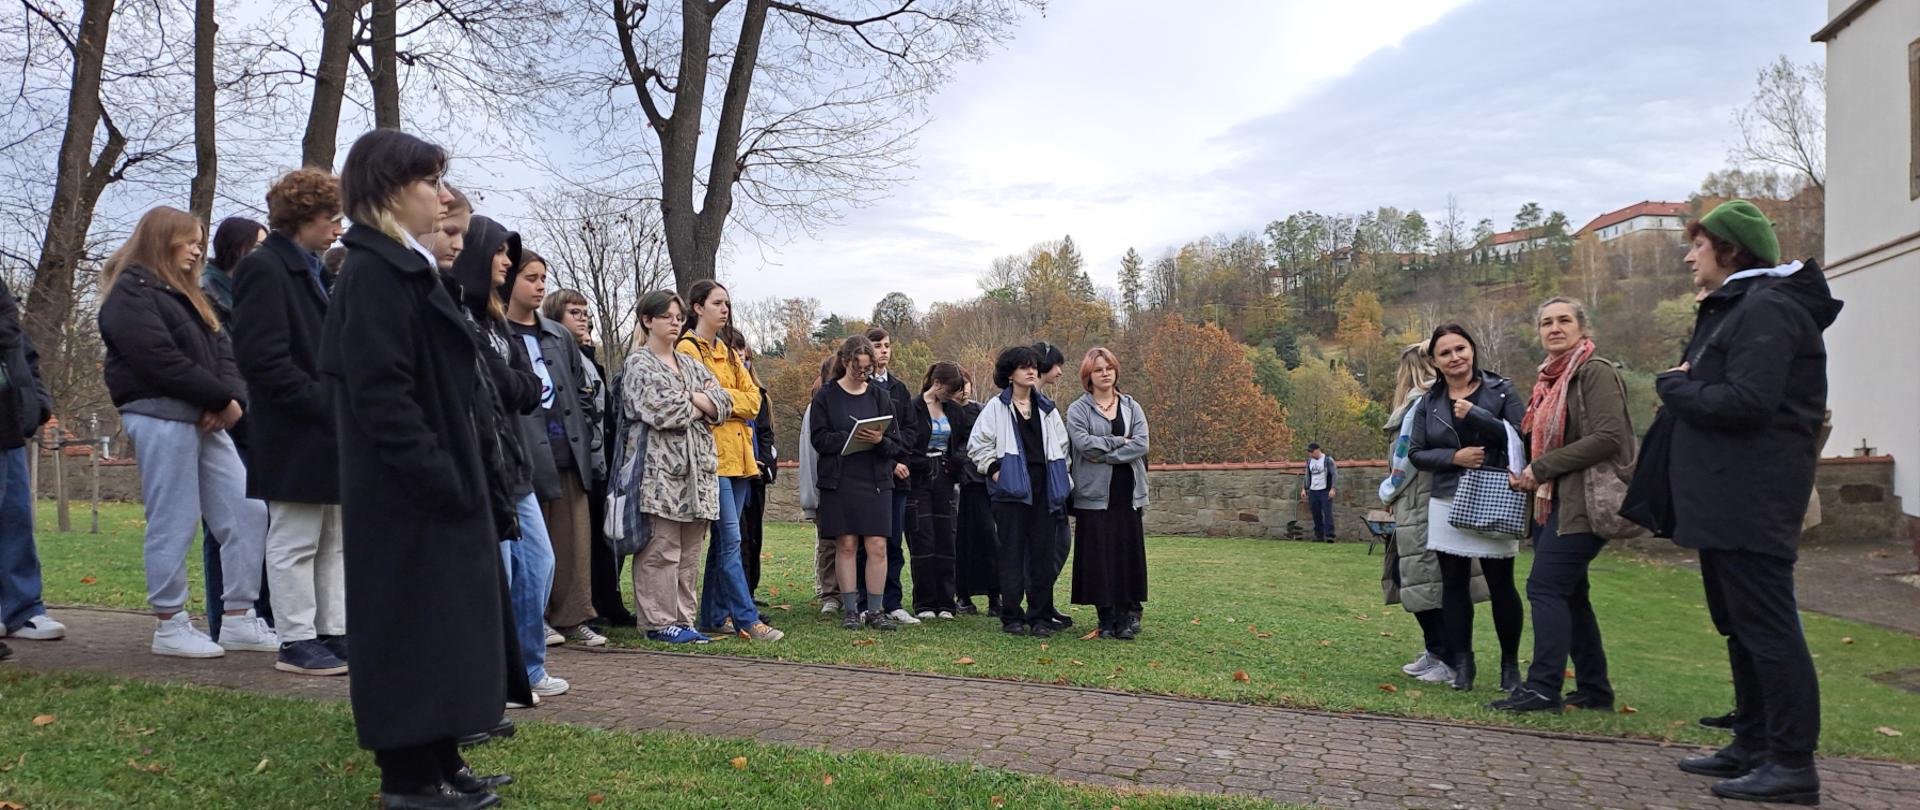 grupa młodzieży szkolnej stoi na trawniku koło kamiennej dzwonnicy i muru kościelnego zwrócona w stronę mówiącej pani stojącej po prawej stronie na pierwszym planie 